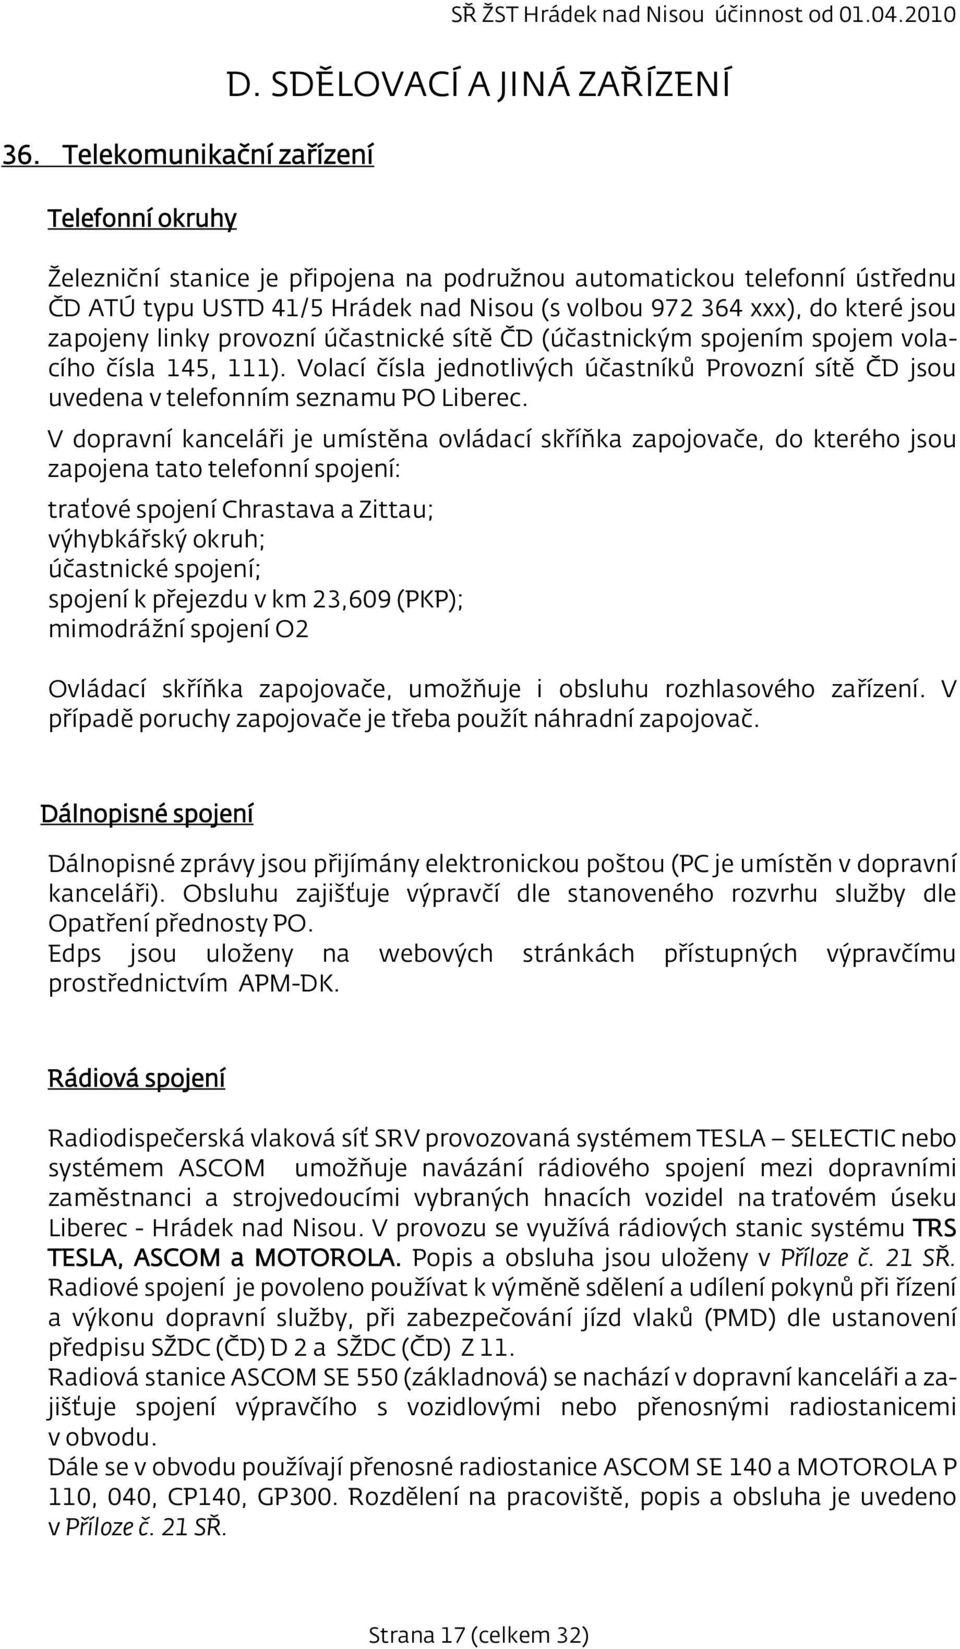 provozní účastnické sítě ČD (účastnickým spojením spojem volacího čísla 145, 111). Volací čísla jednotlivých účastníků Provozní sítě ČD jsou uvedena v telefonním seznamu PO Liberec.